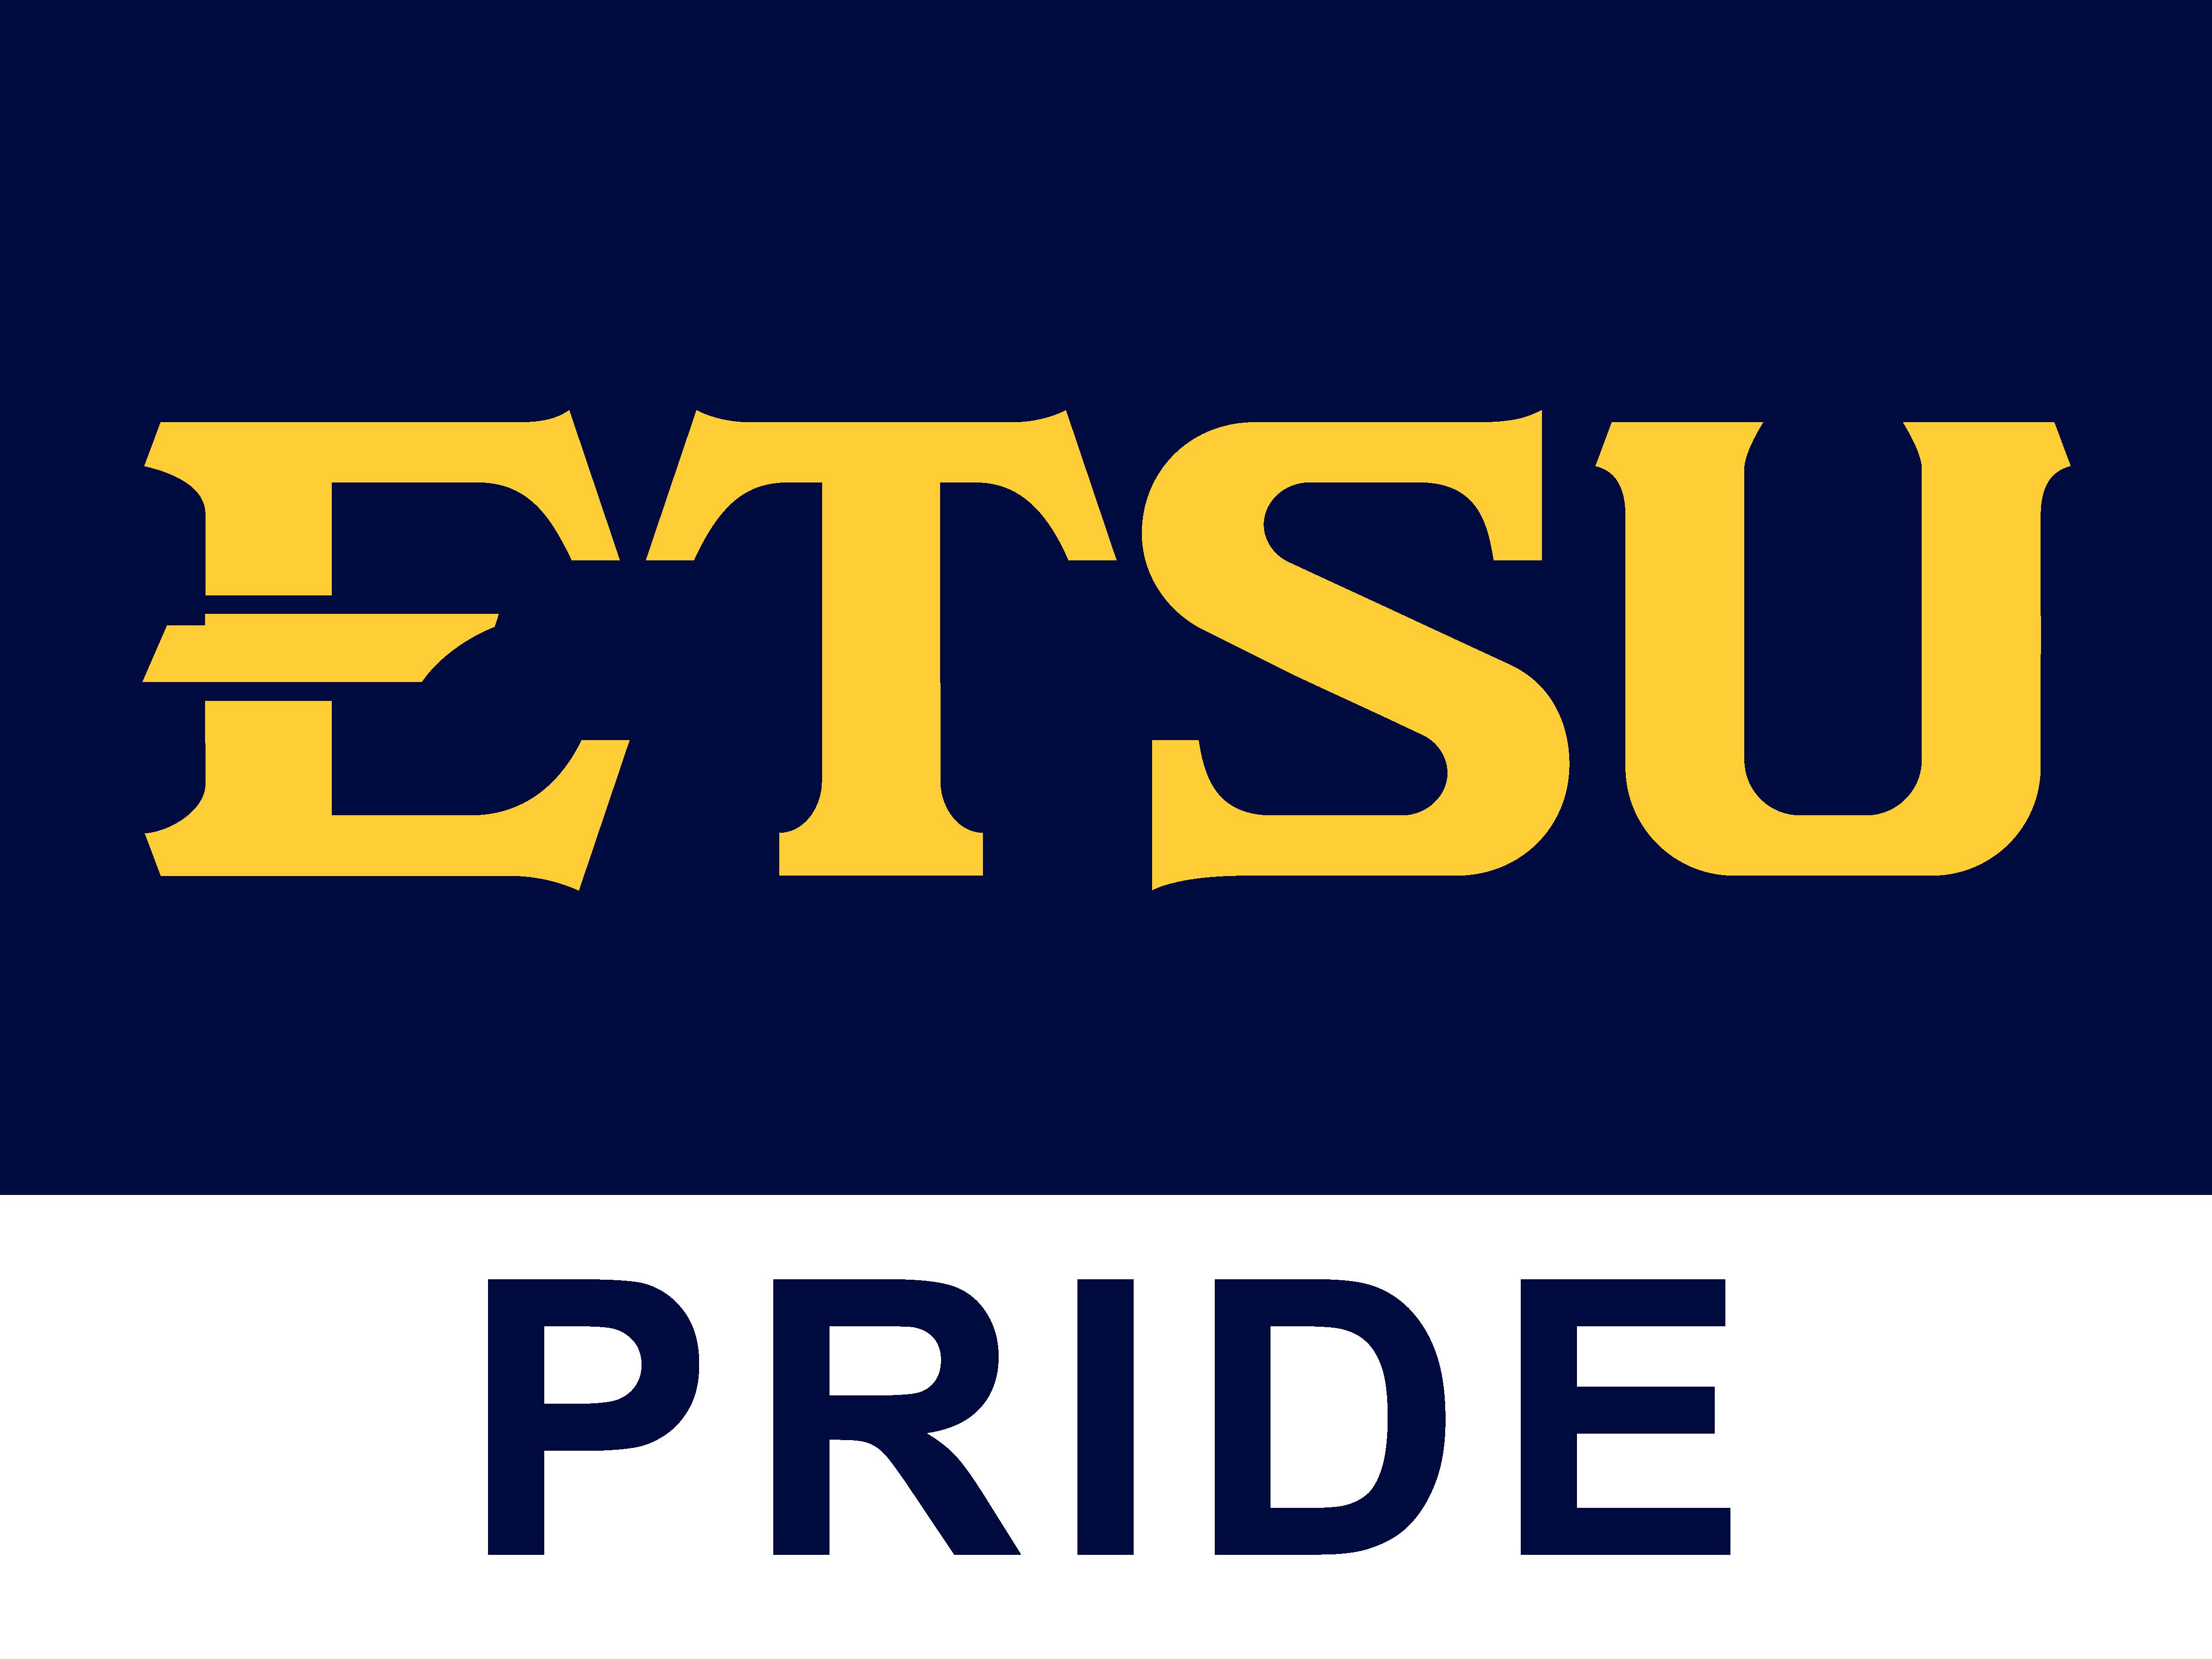 ETSU Pride Sign